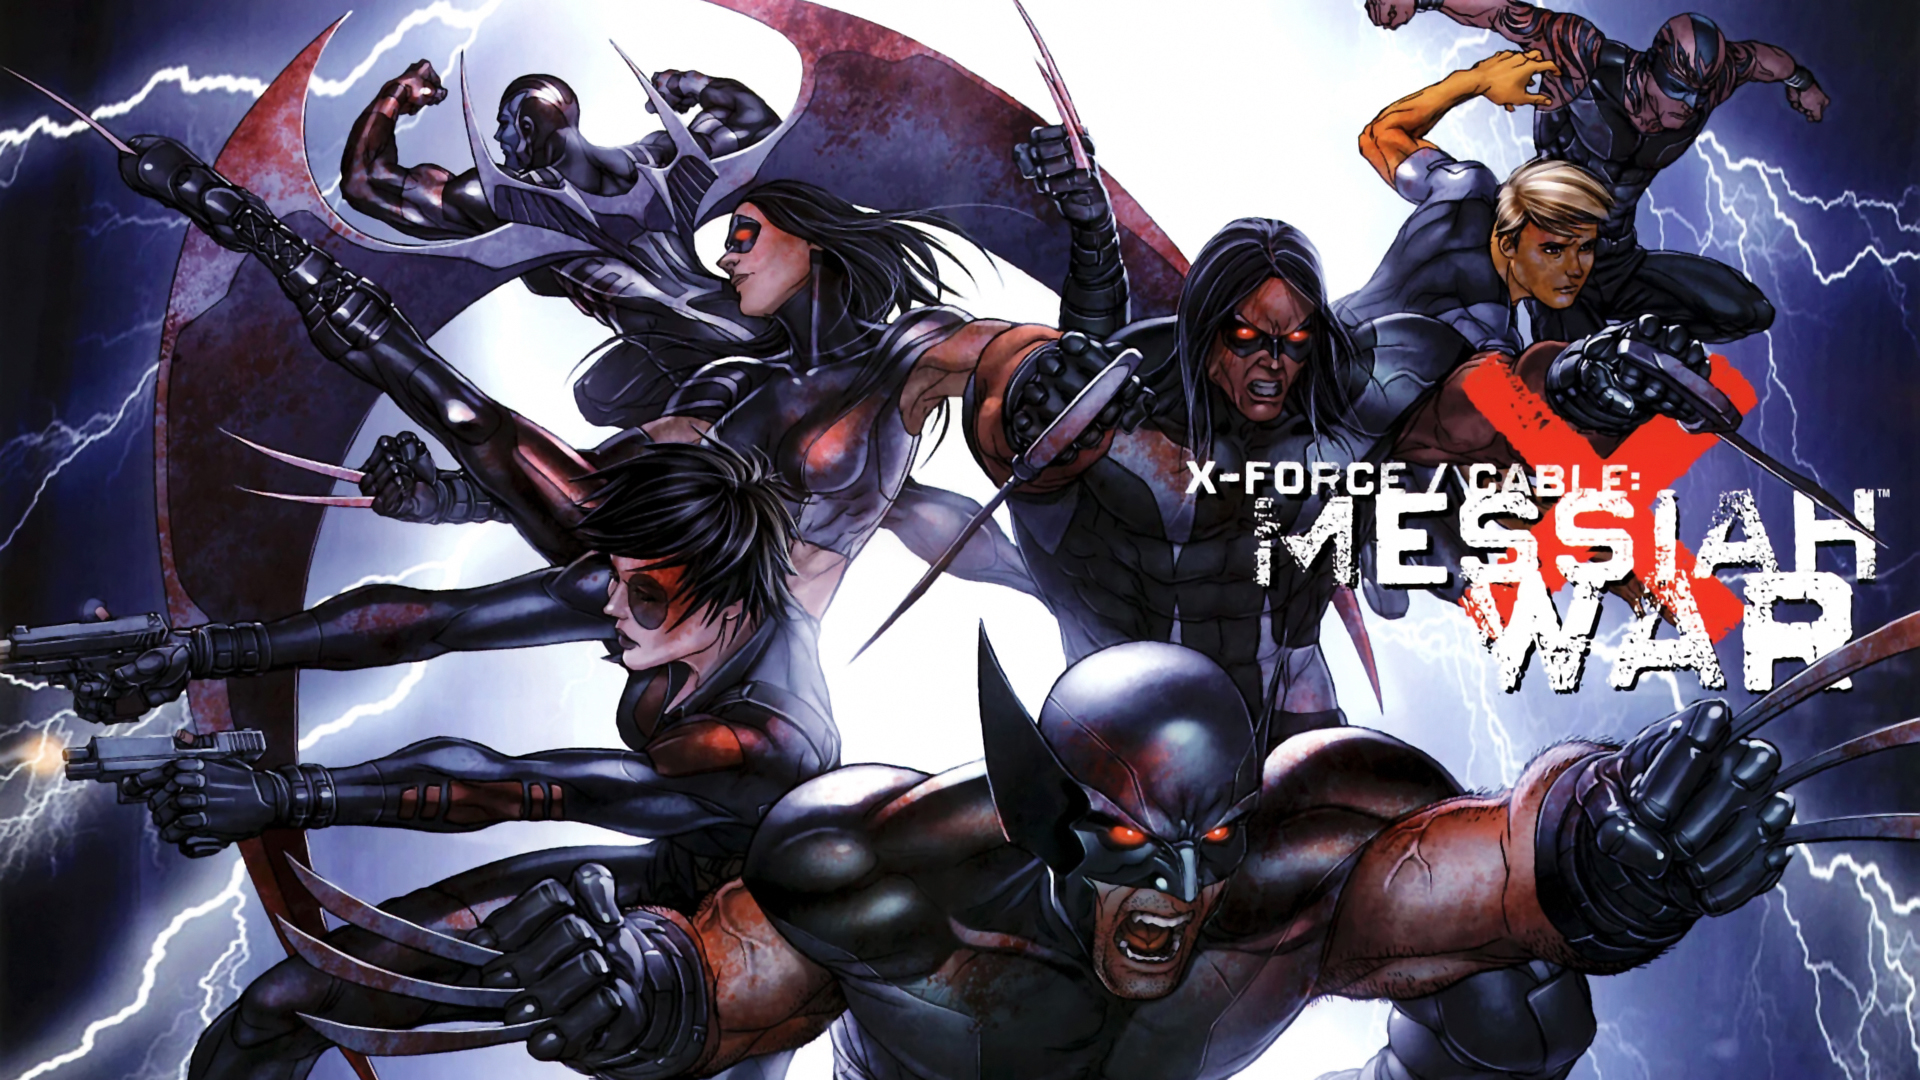 Bande-dessinées X-Force Fond d'écran HD | Image